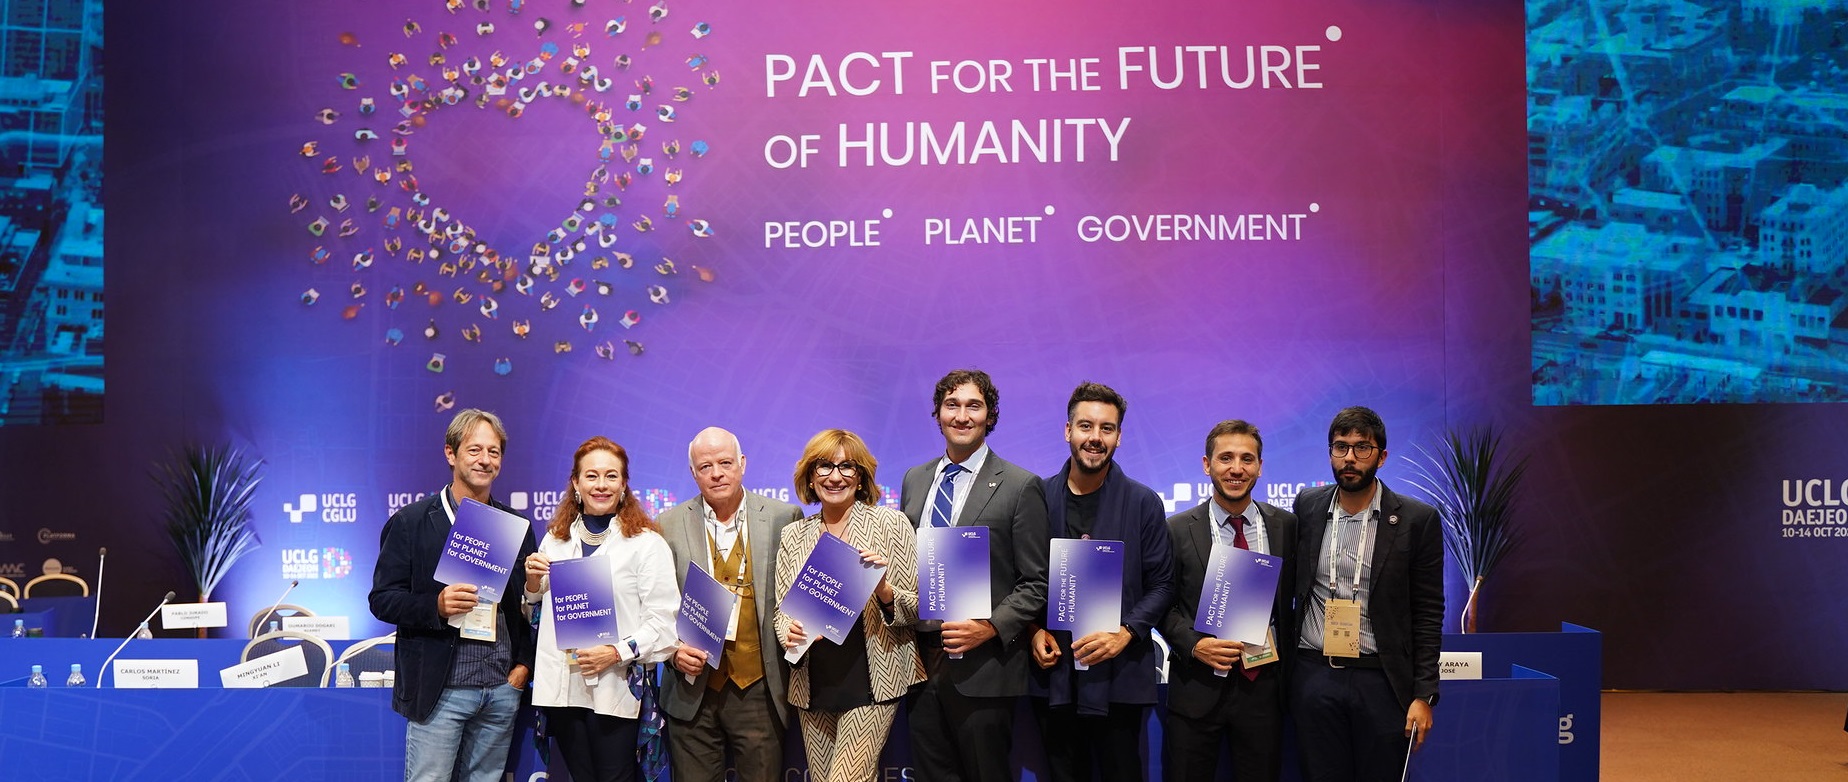 Le pacte pour l'avenir de l'humanité